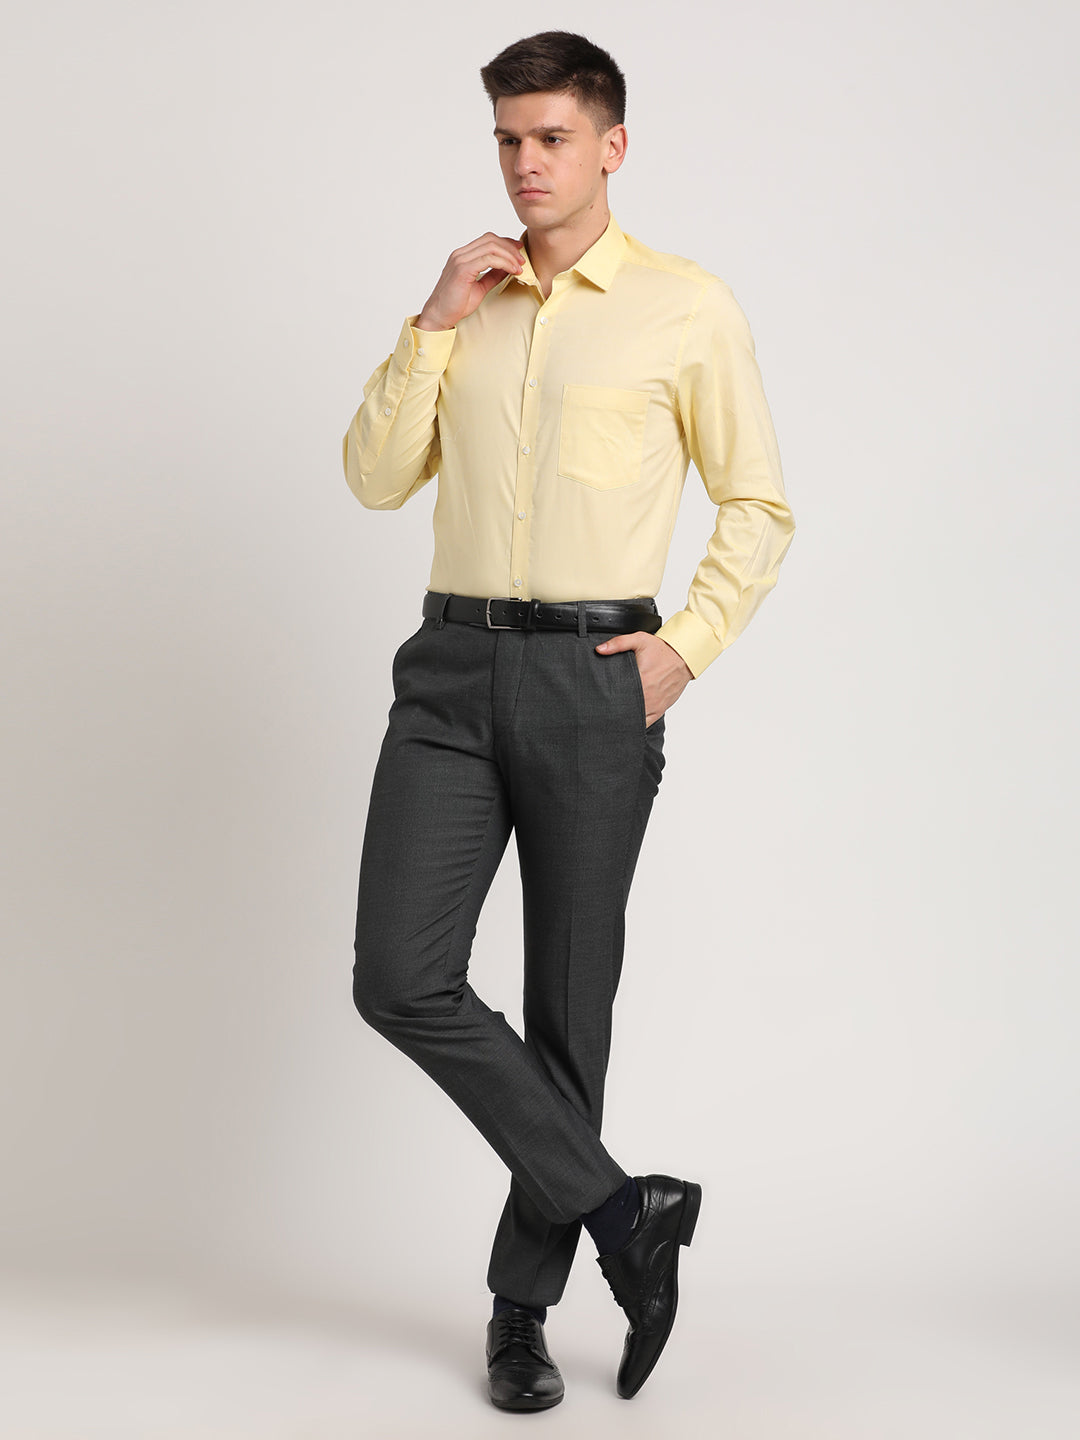 100% Cotton Lemon Plain Regular Fit Full Sleeve Formal Shirt